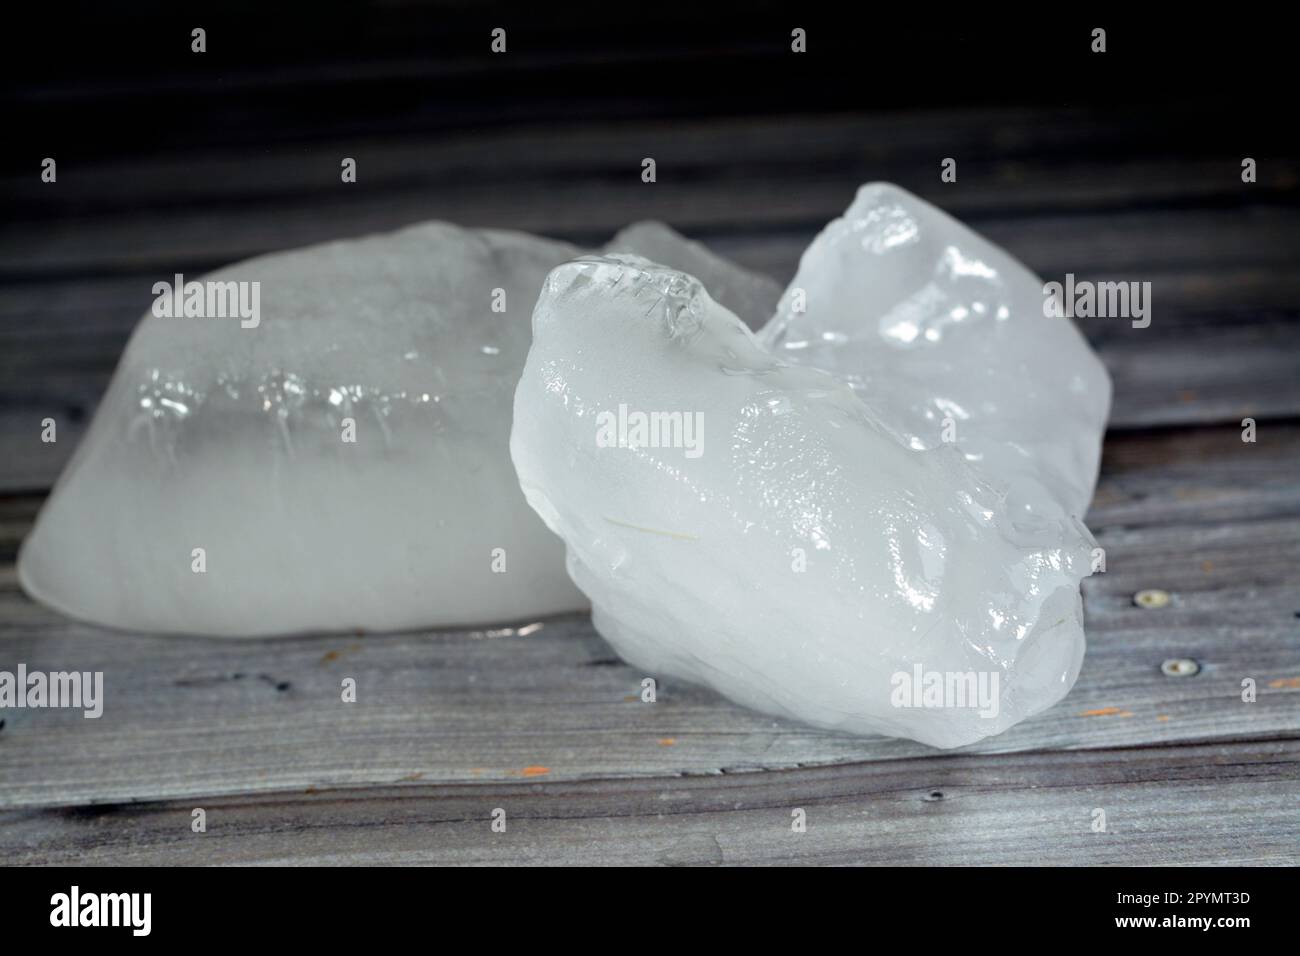 Eisstücke aus dicken festen Teilen gefrorenen Wassers, isoliert auf Holzhintergrund, selektiver Fokus von Frosteisstücken, die für Erfrischungen verwendet werden könnten Stockfoto